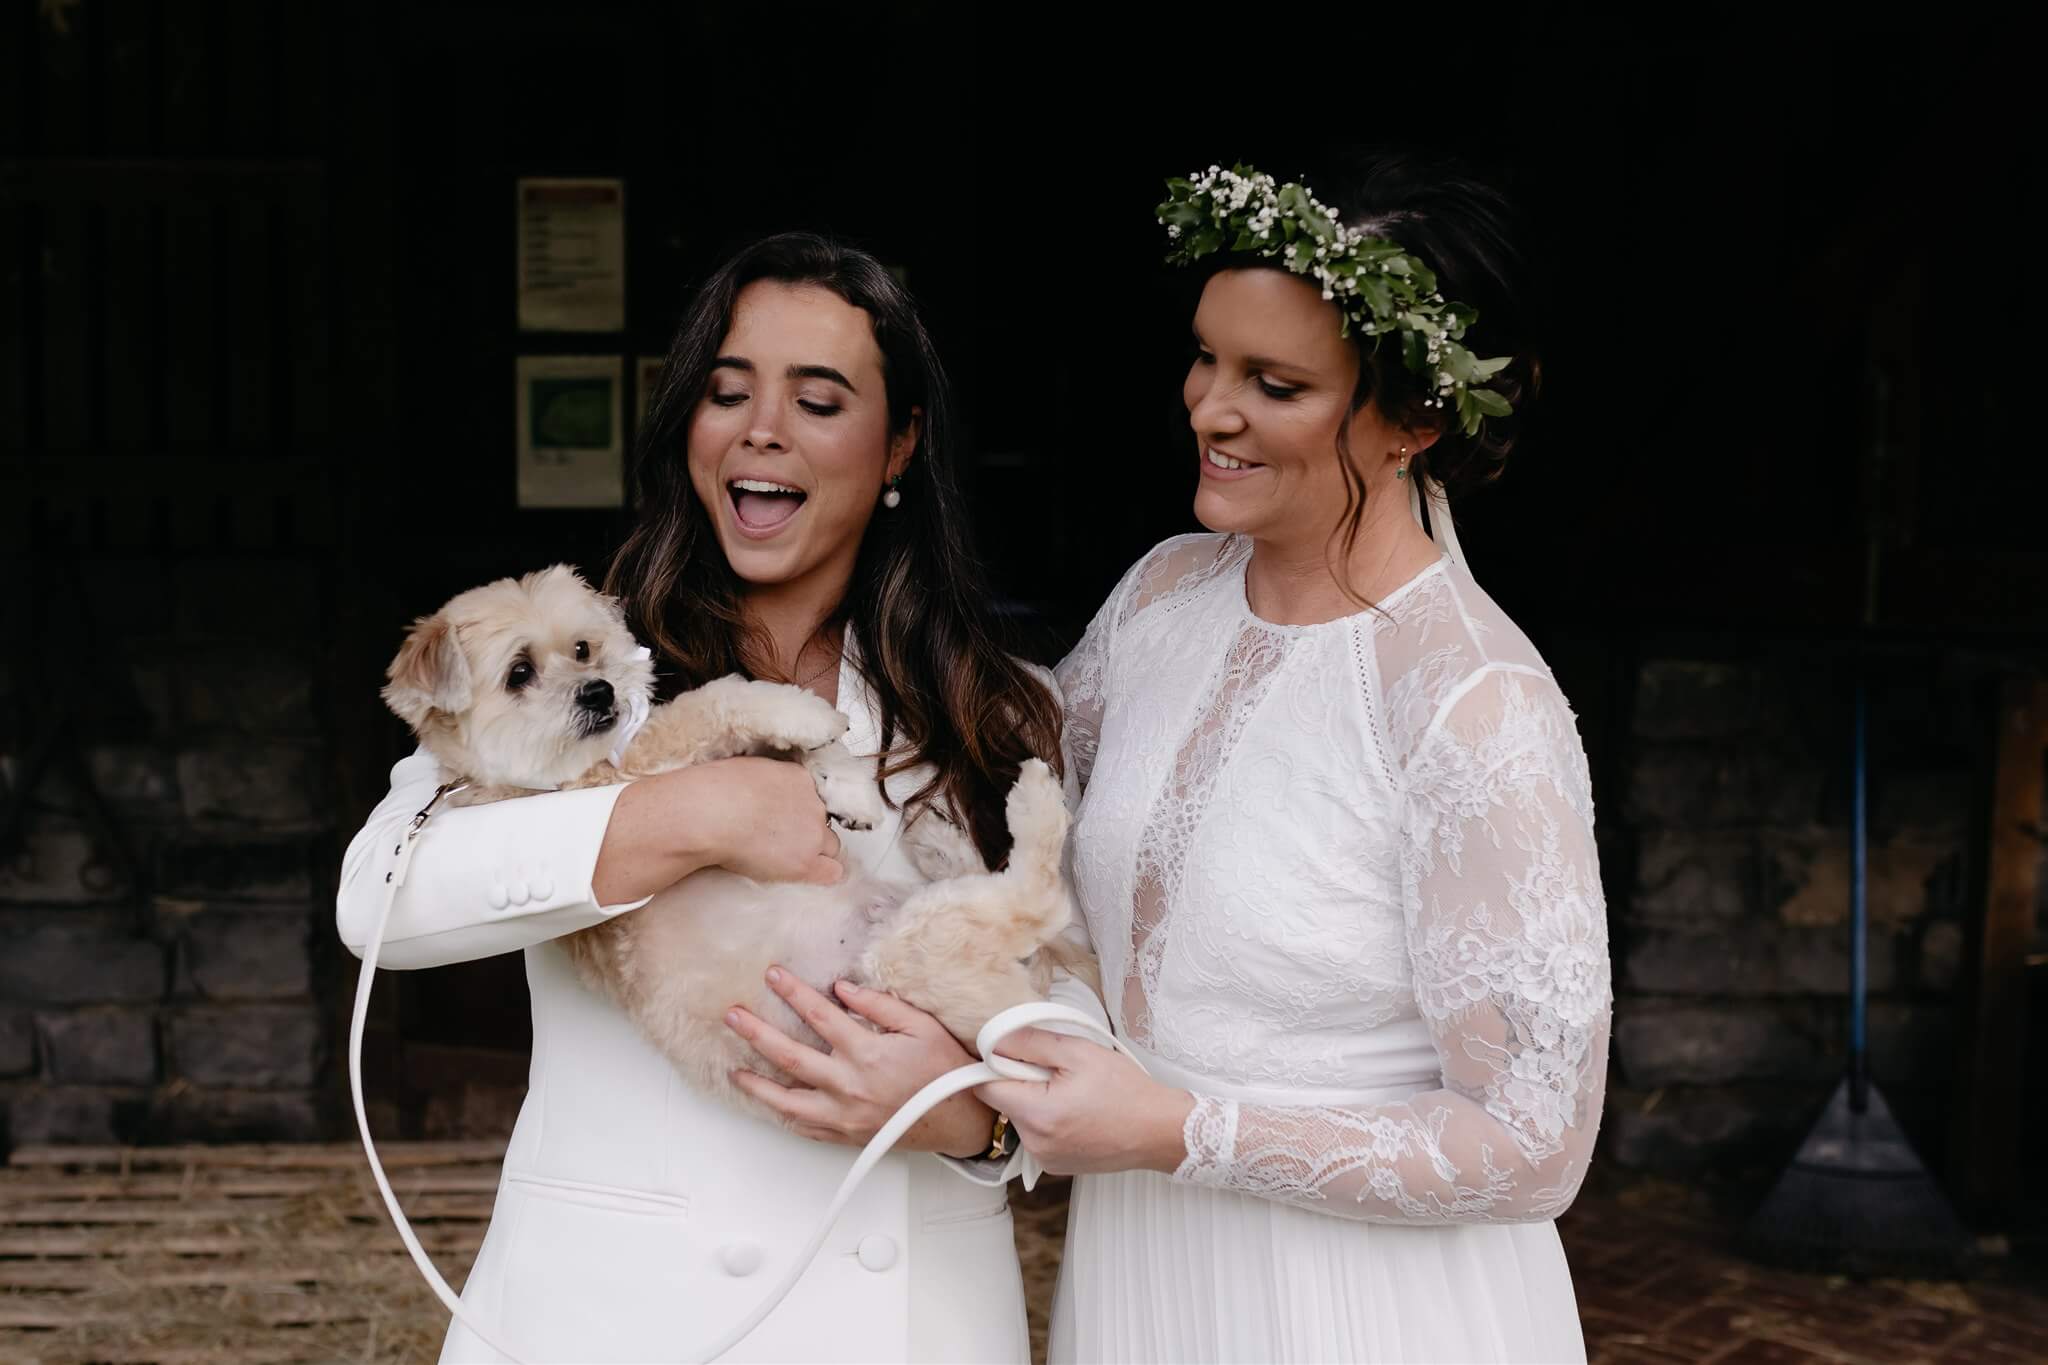 Wedding brides with dog at farm